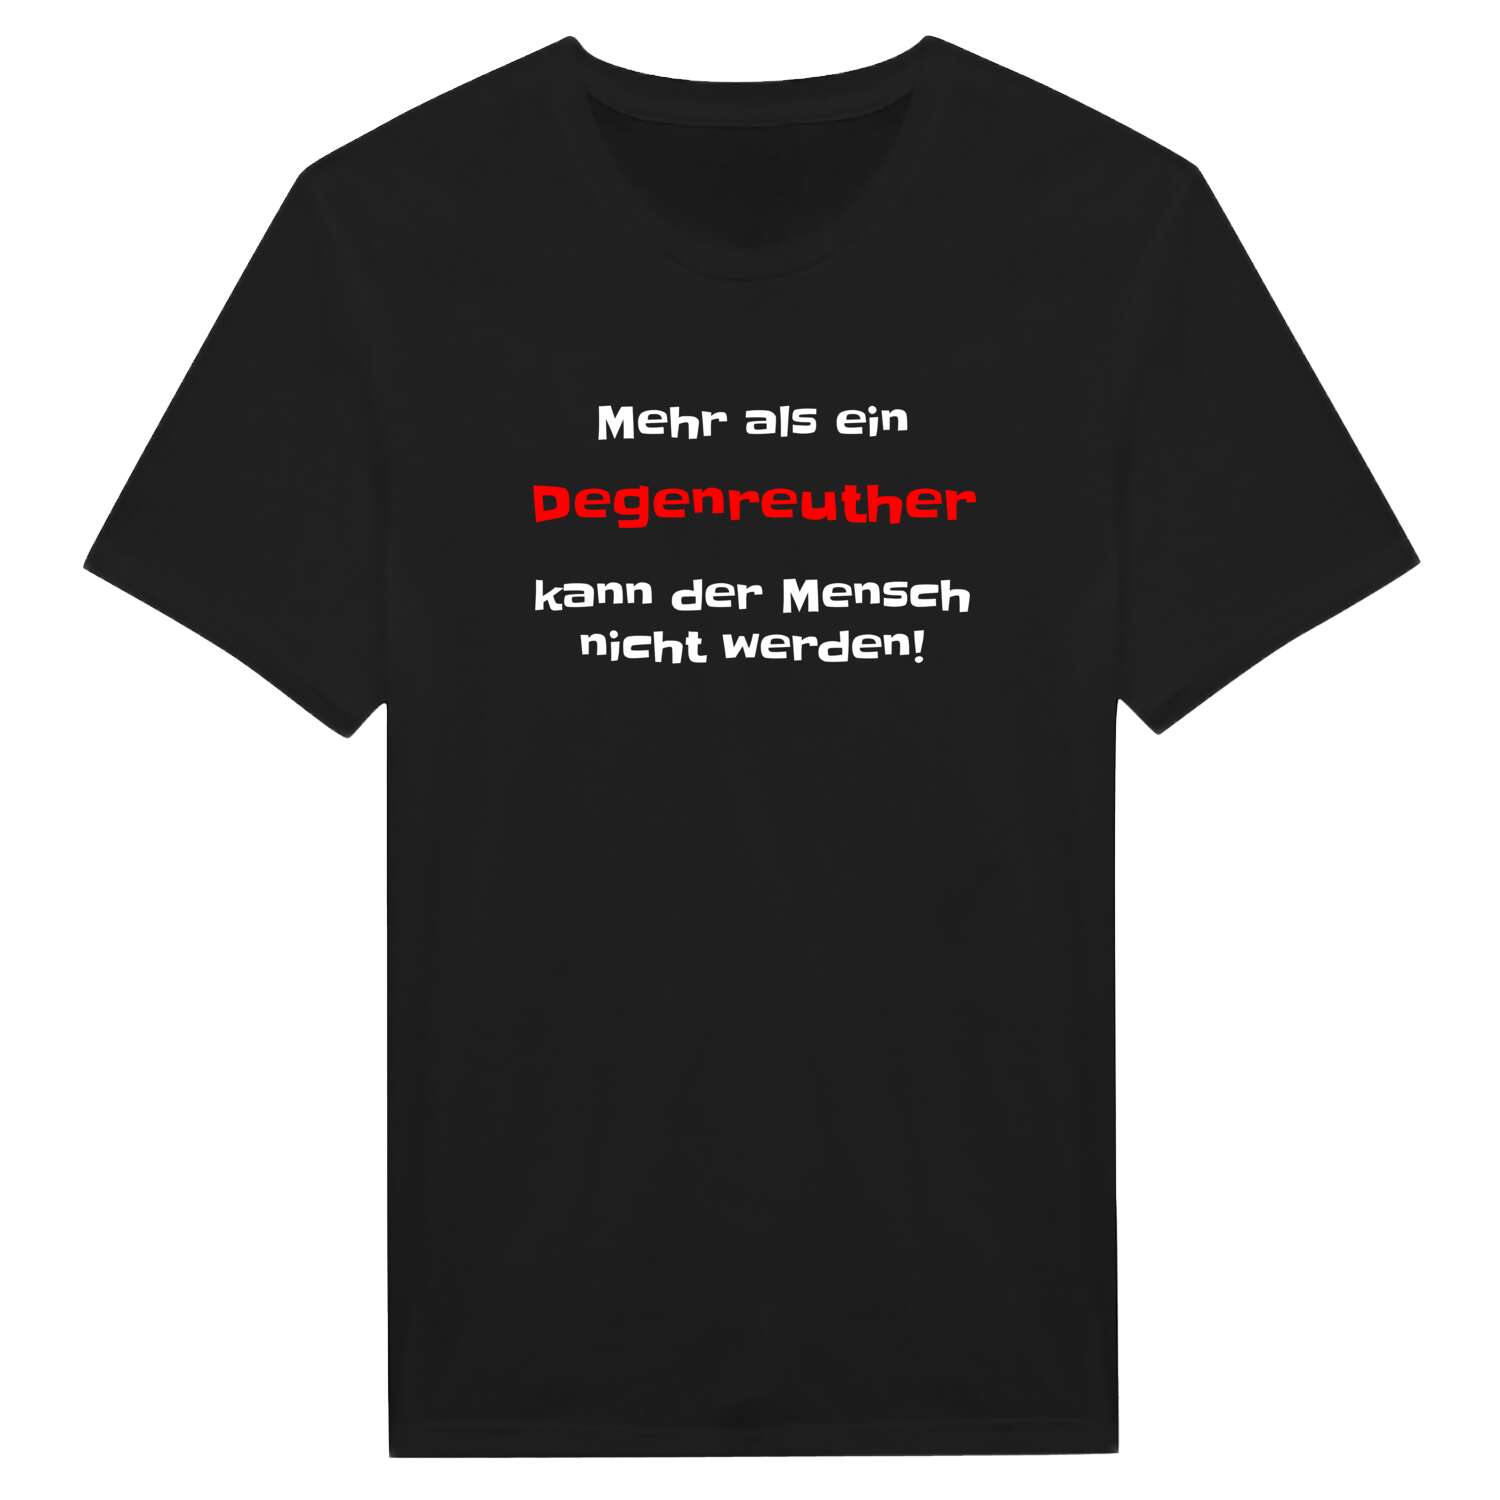 Degenreuth T-Shirt »Mehr als ein«